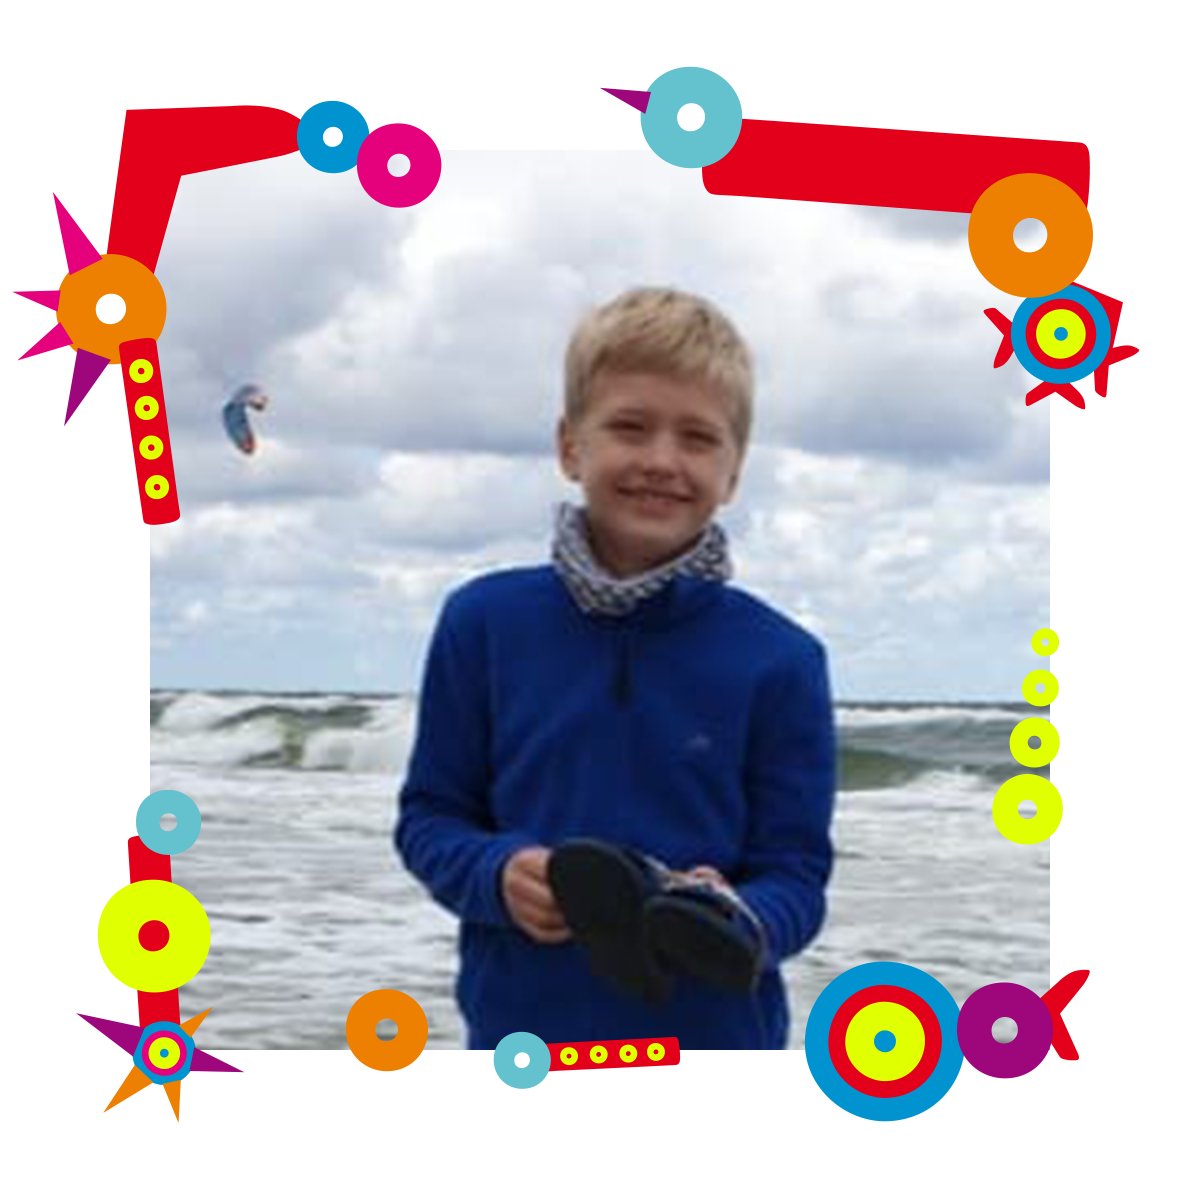 Na zdjęciu uśmiechnięty chłopiec. Stoi na tle morza. W dłoniach trzyma klapki. Dookoła zdjęcia kolorowa ramka.